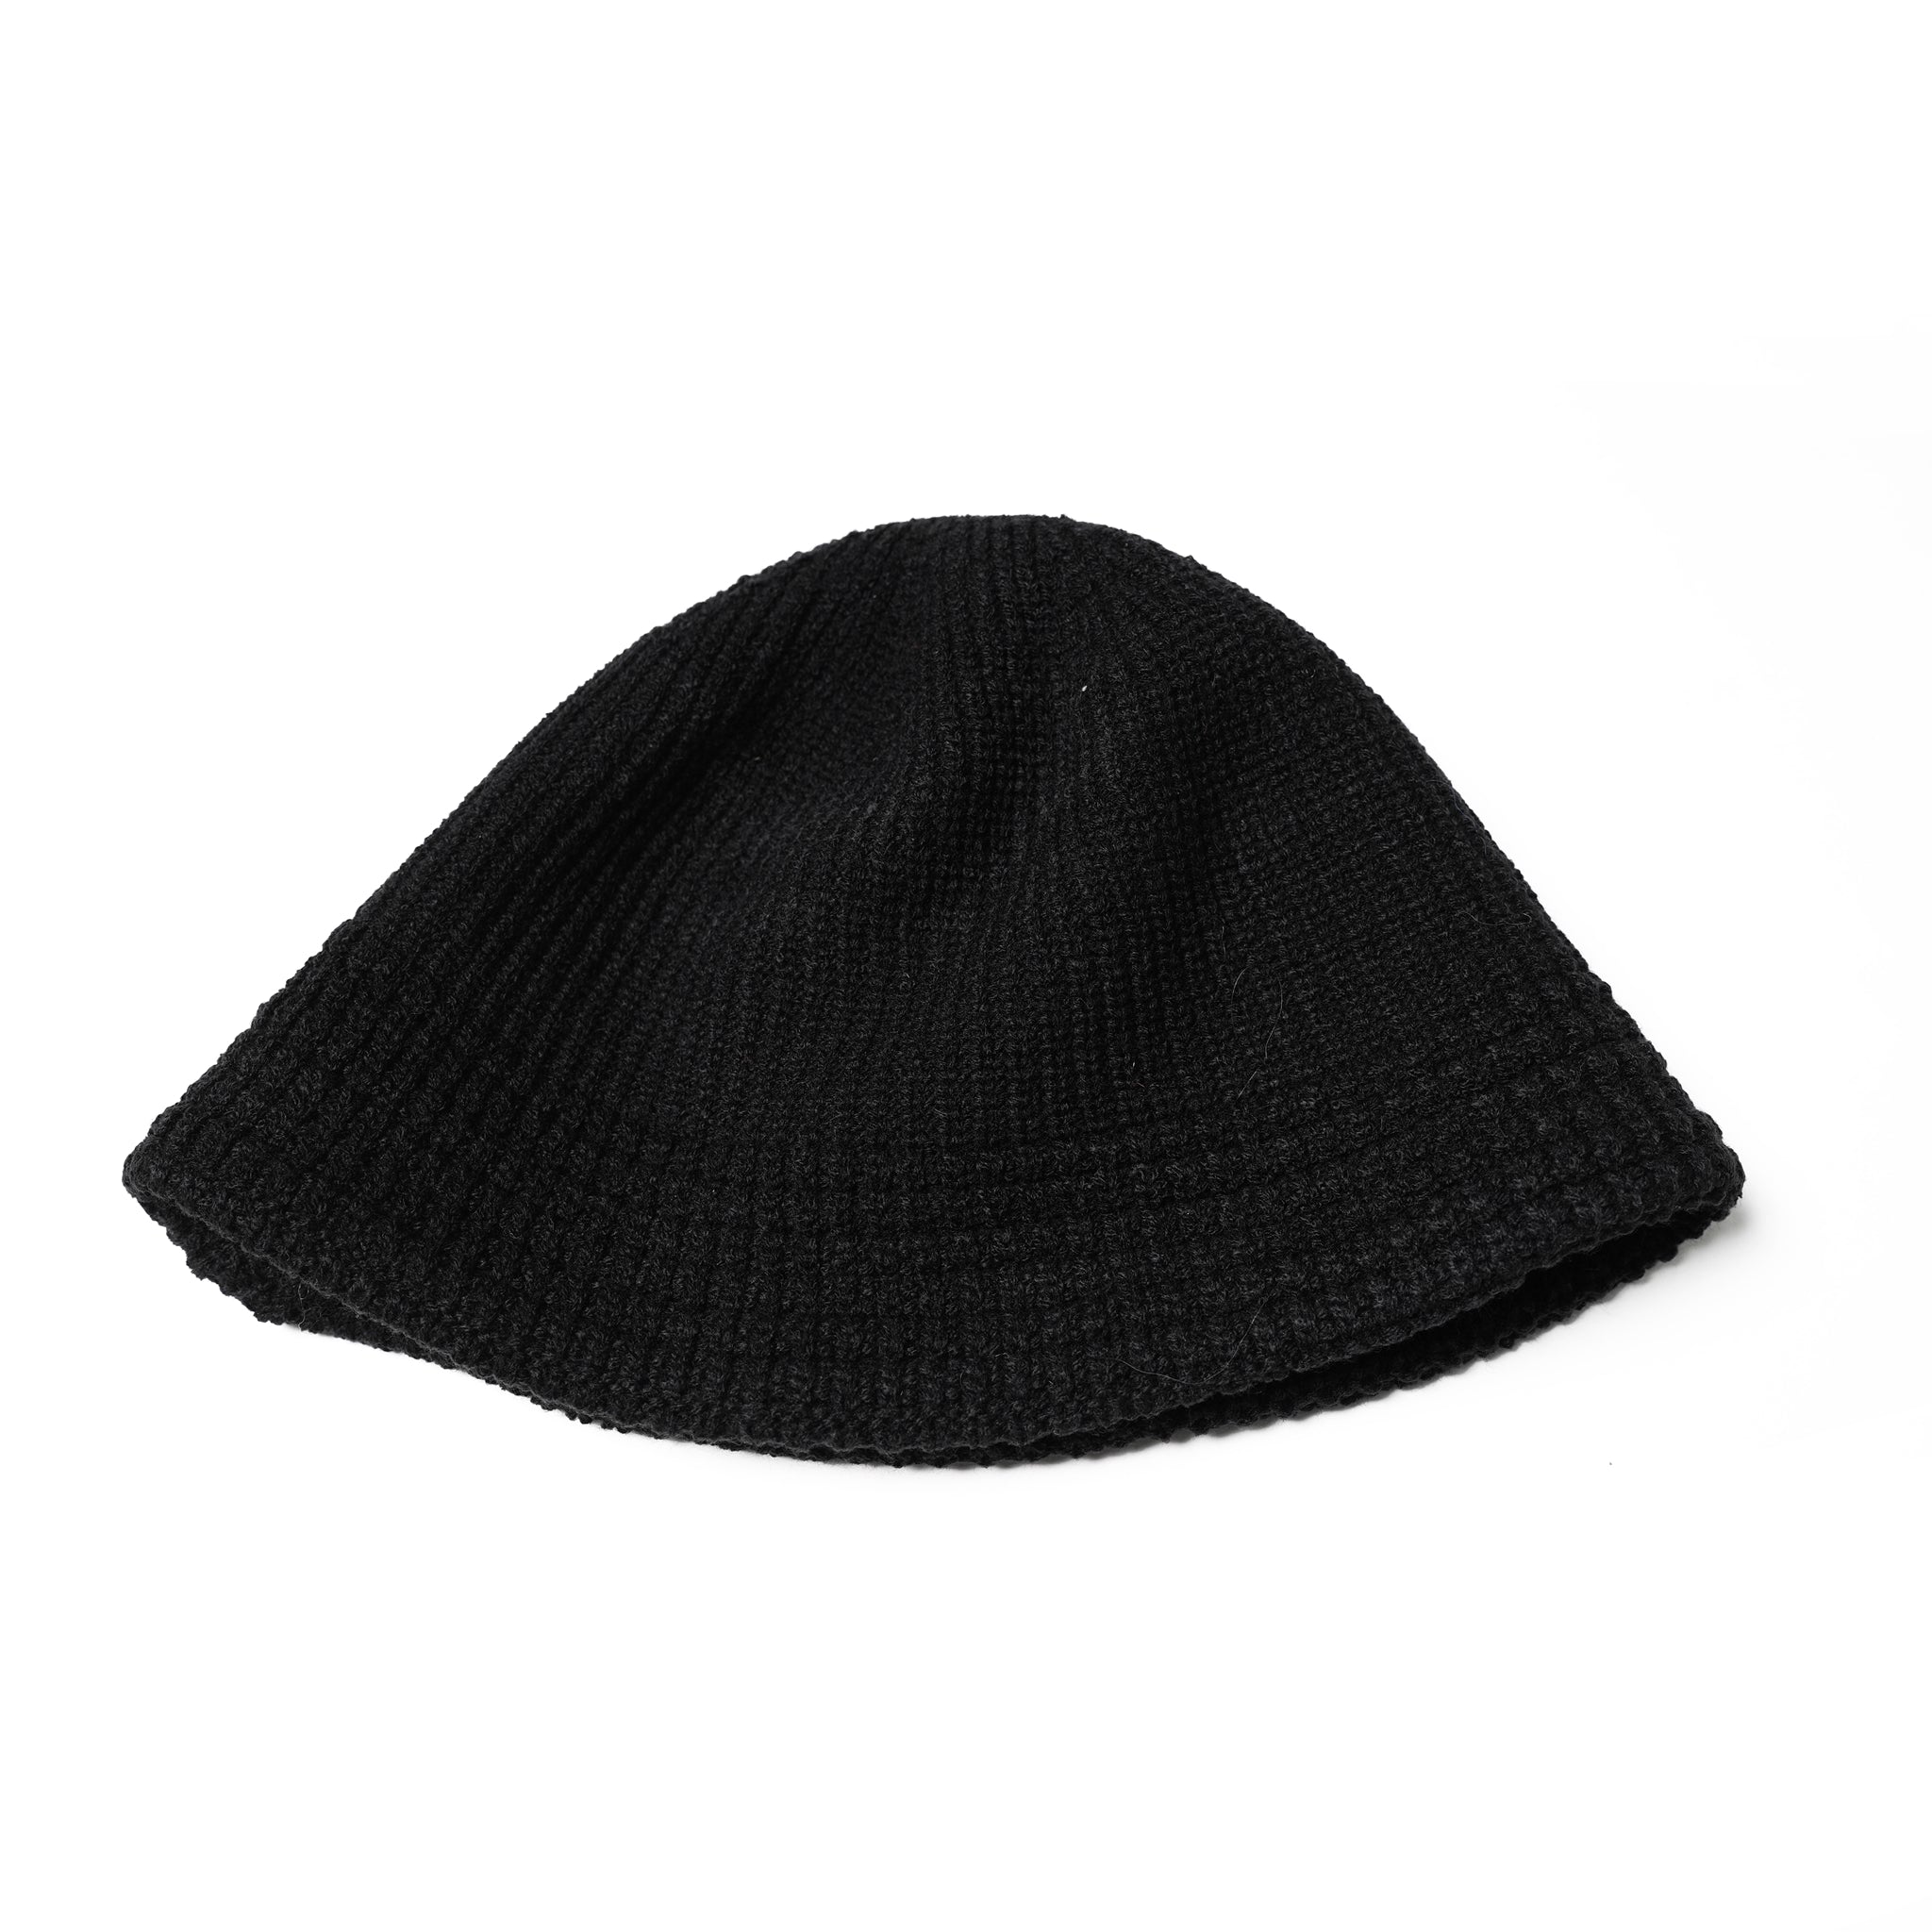 No:901T-1721 | Name:KNIT CAP-HAT | Color:Brown-Orange/Black【QUOLT_クオルト】【ネコポス選択可能】